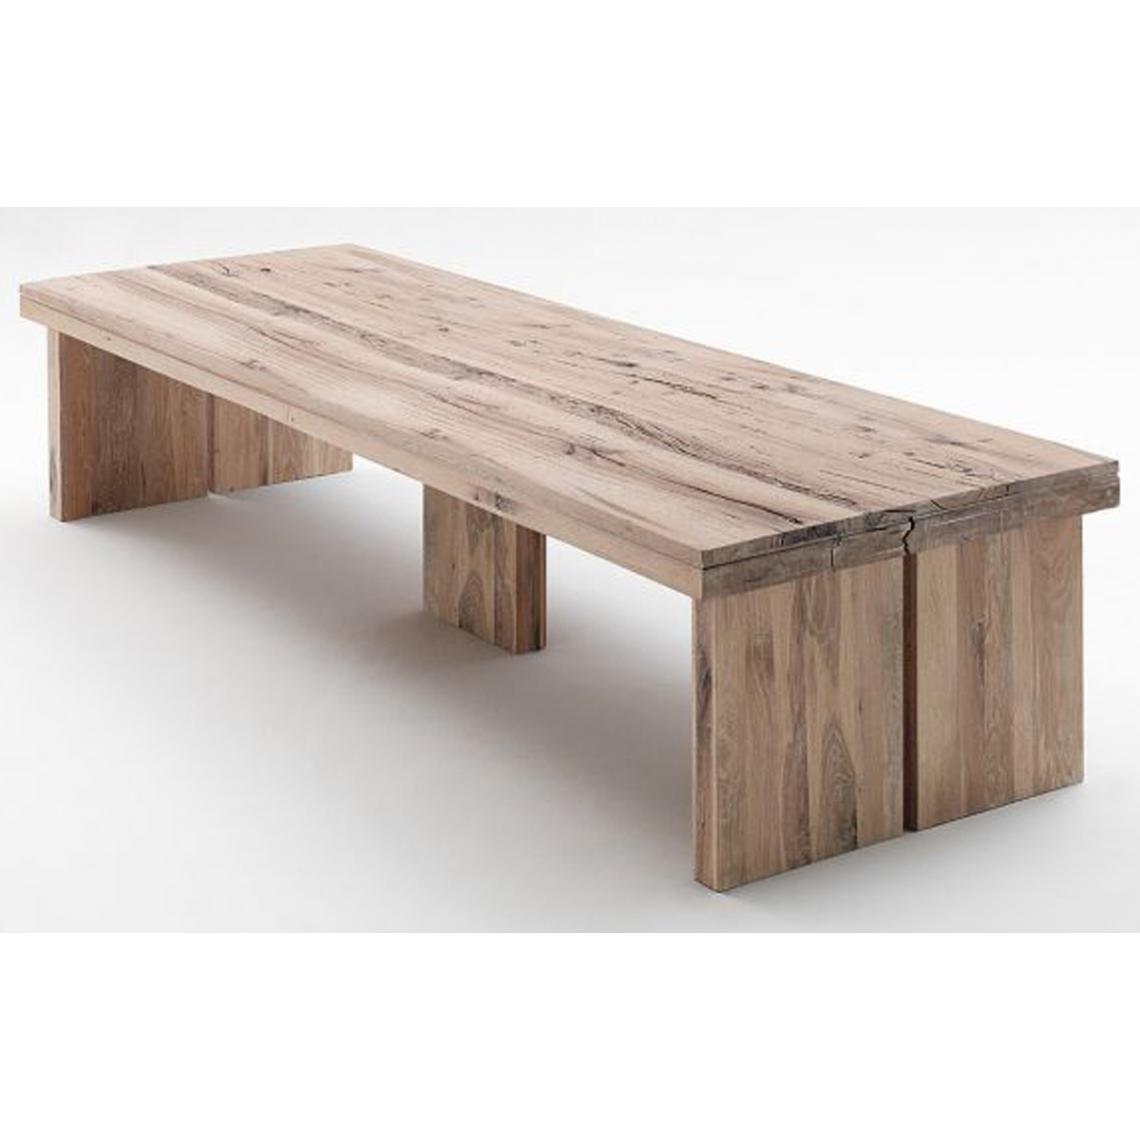 Pegane - Table à manger rectangulaire en chêne chaulé, laqué mat massif - L.300 x H.76 x P.120 cm - Tables à manger